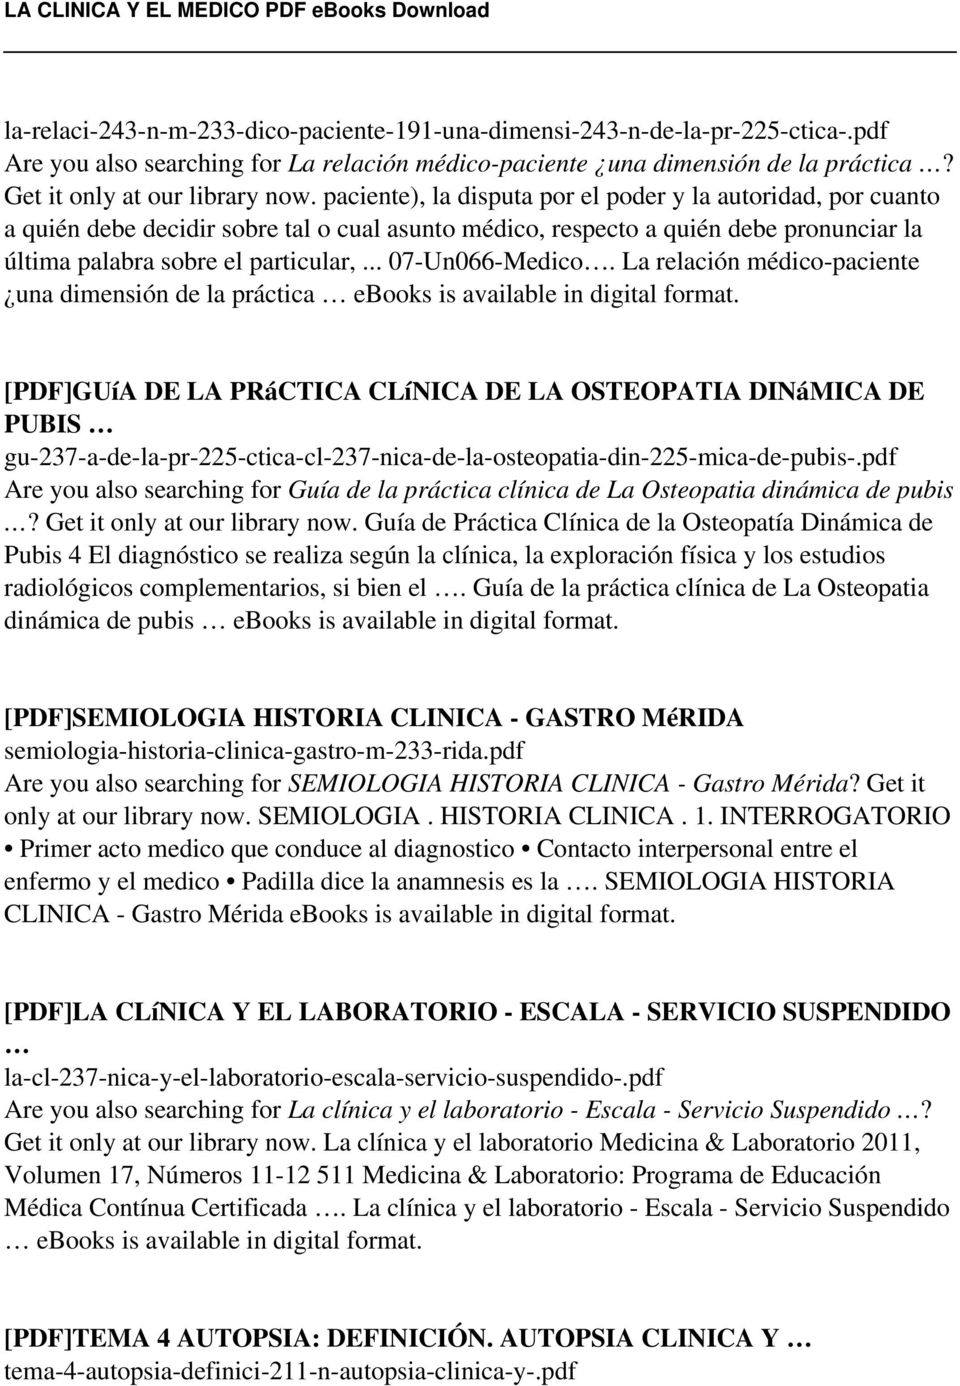 .. 07-Un066-Medico. La relación médico-paciente una dimensión de la práctica ebooks is available in digital format.